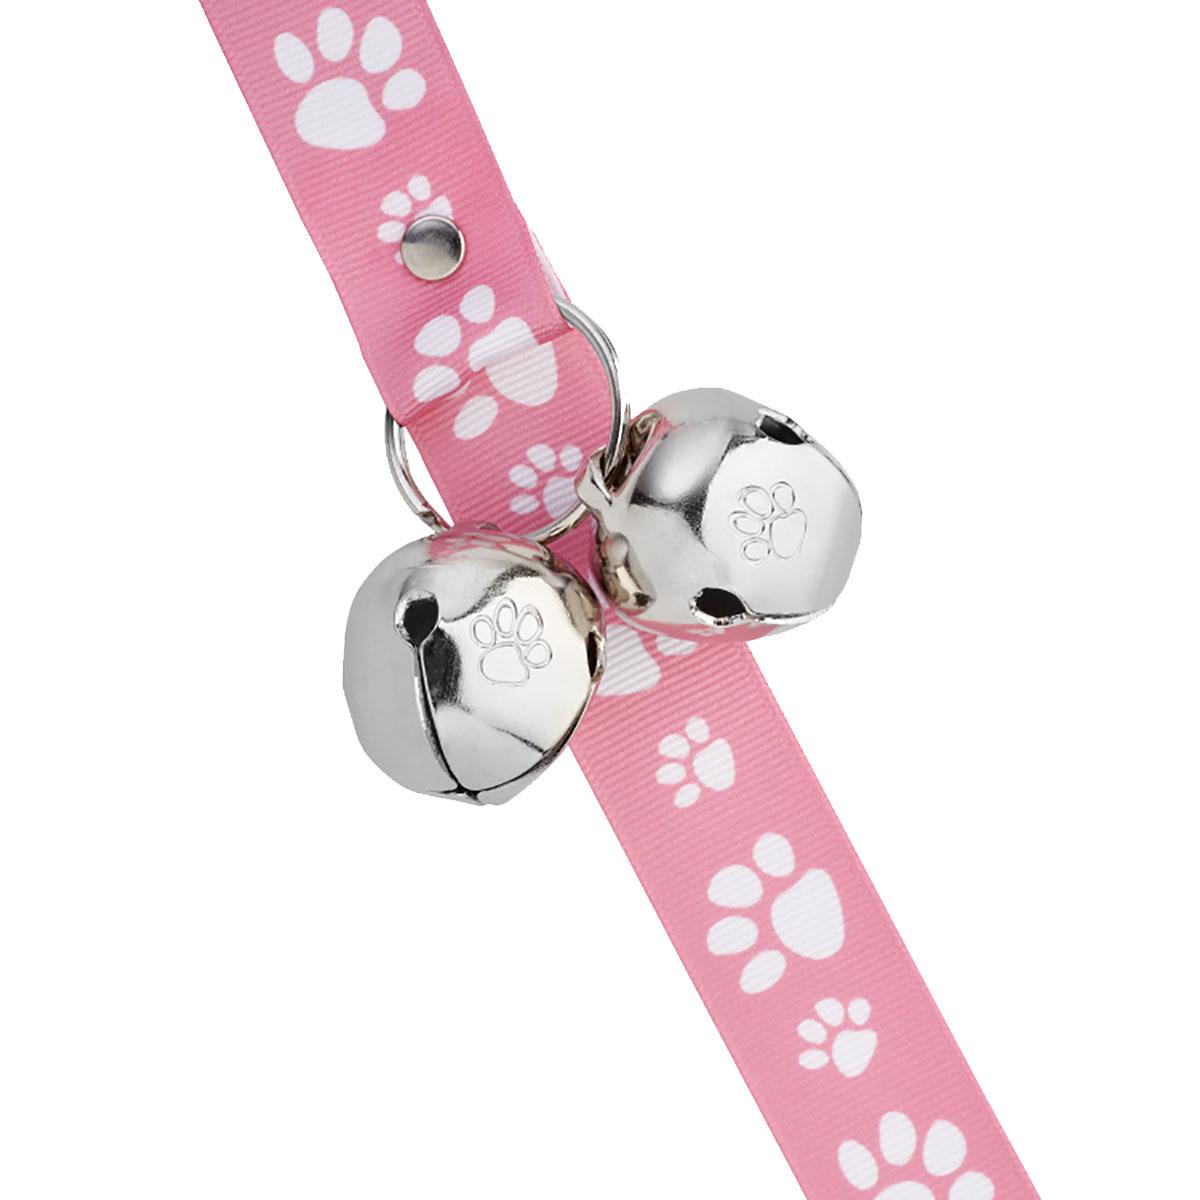 Poochie Bells Signature Tracks Dog Doorbell Potty Alert - Pink